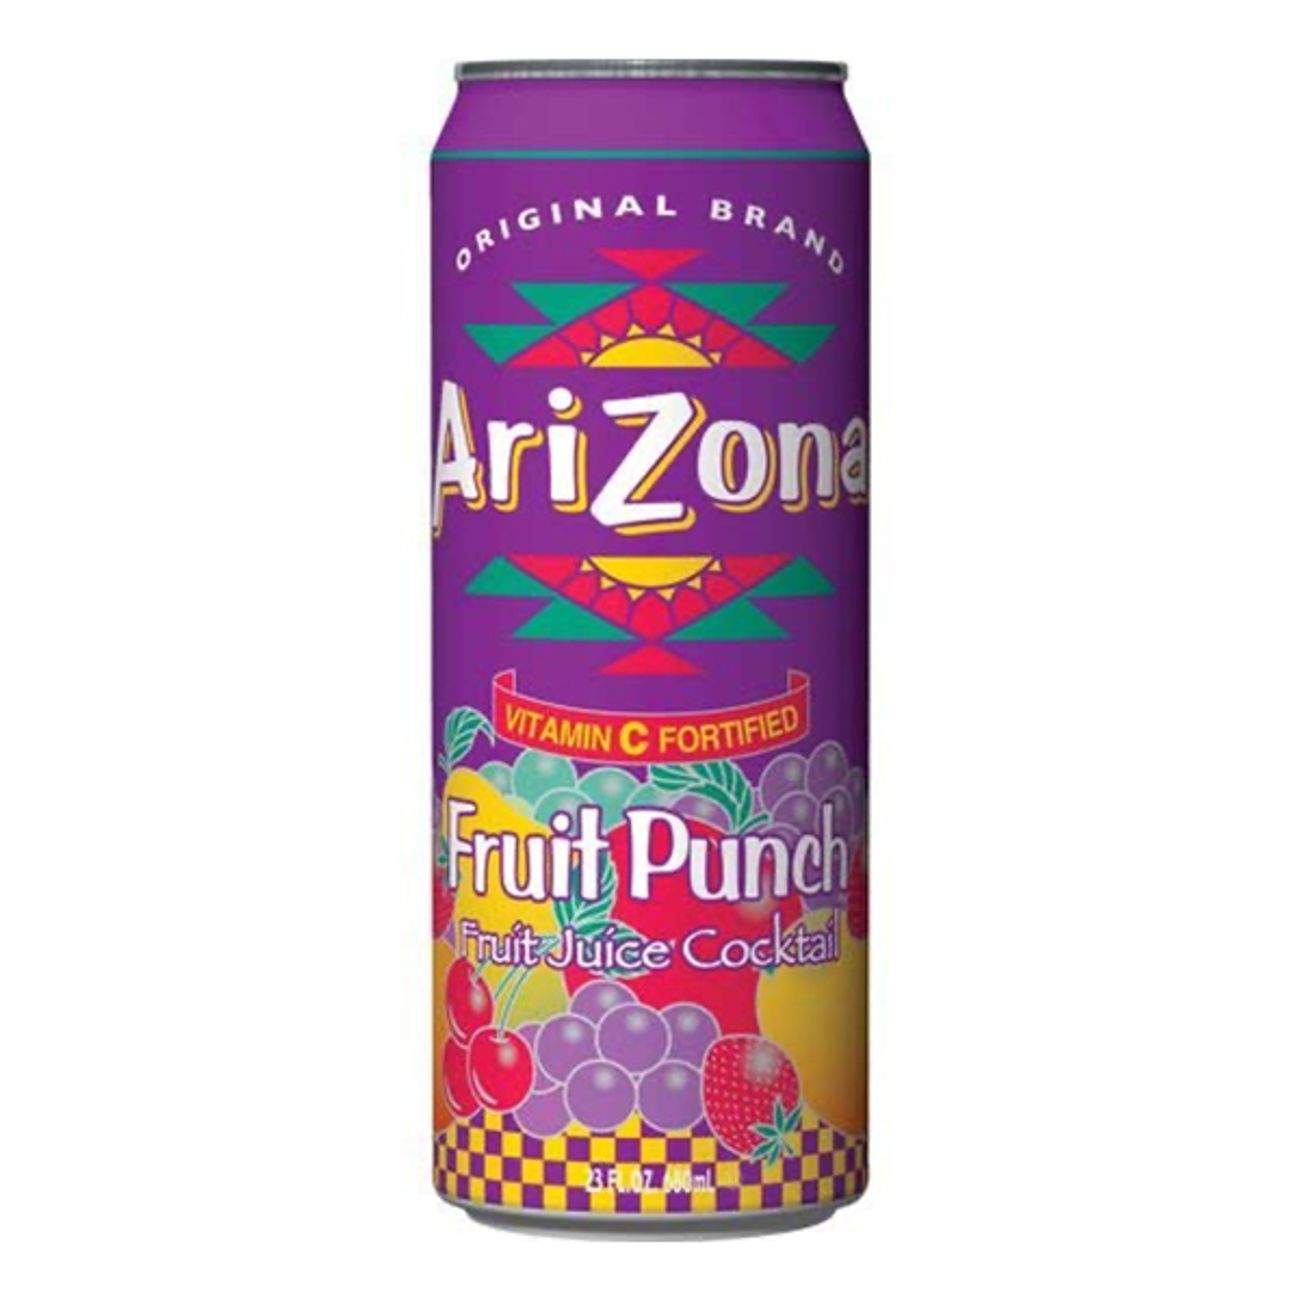 arizona-fruit-punch-2